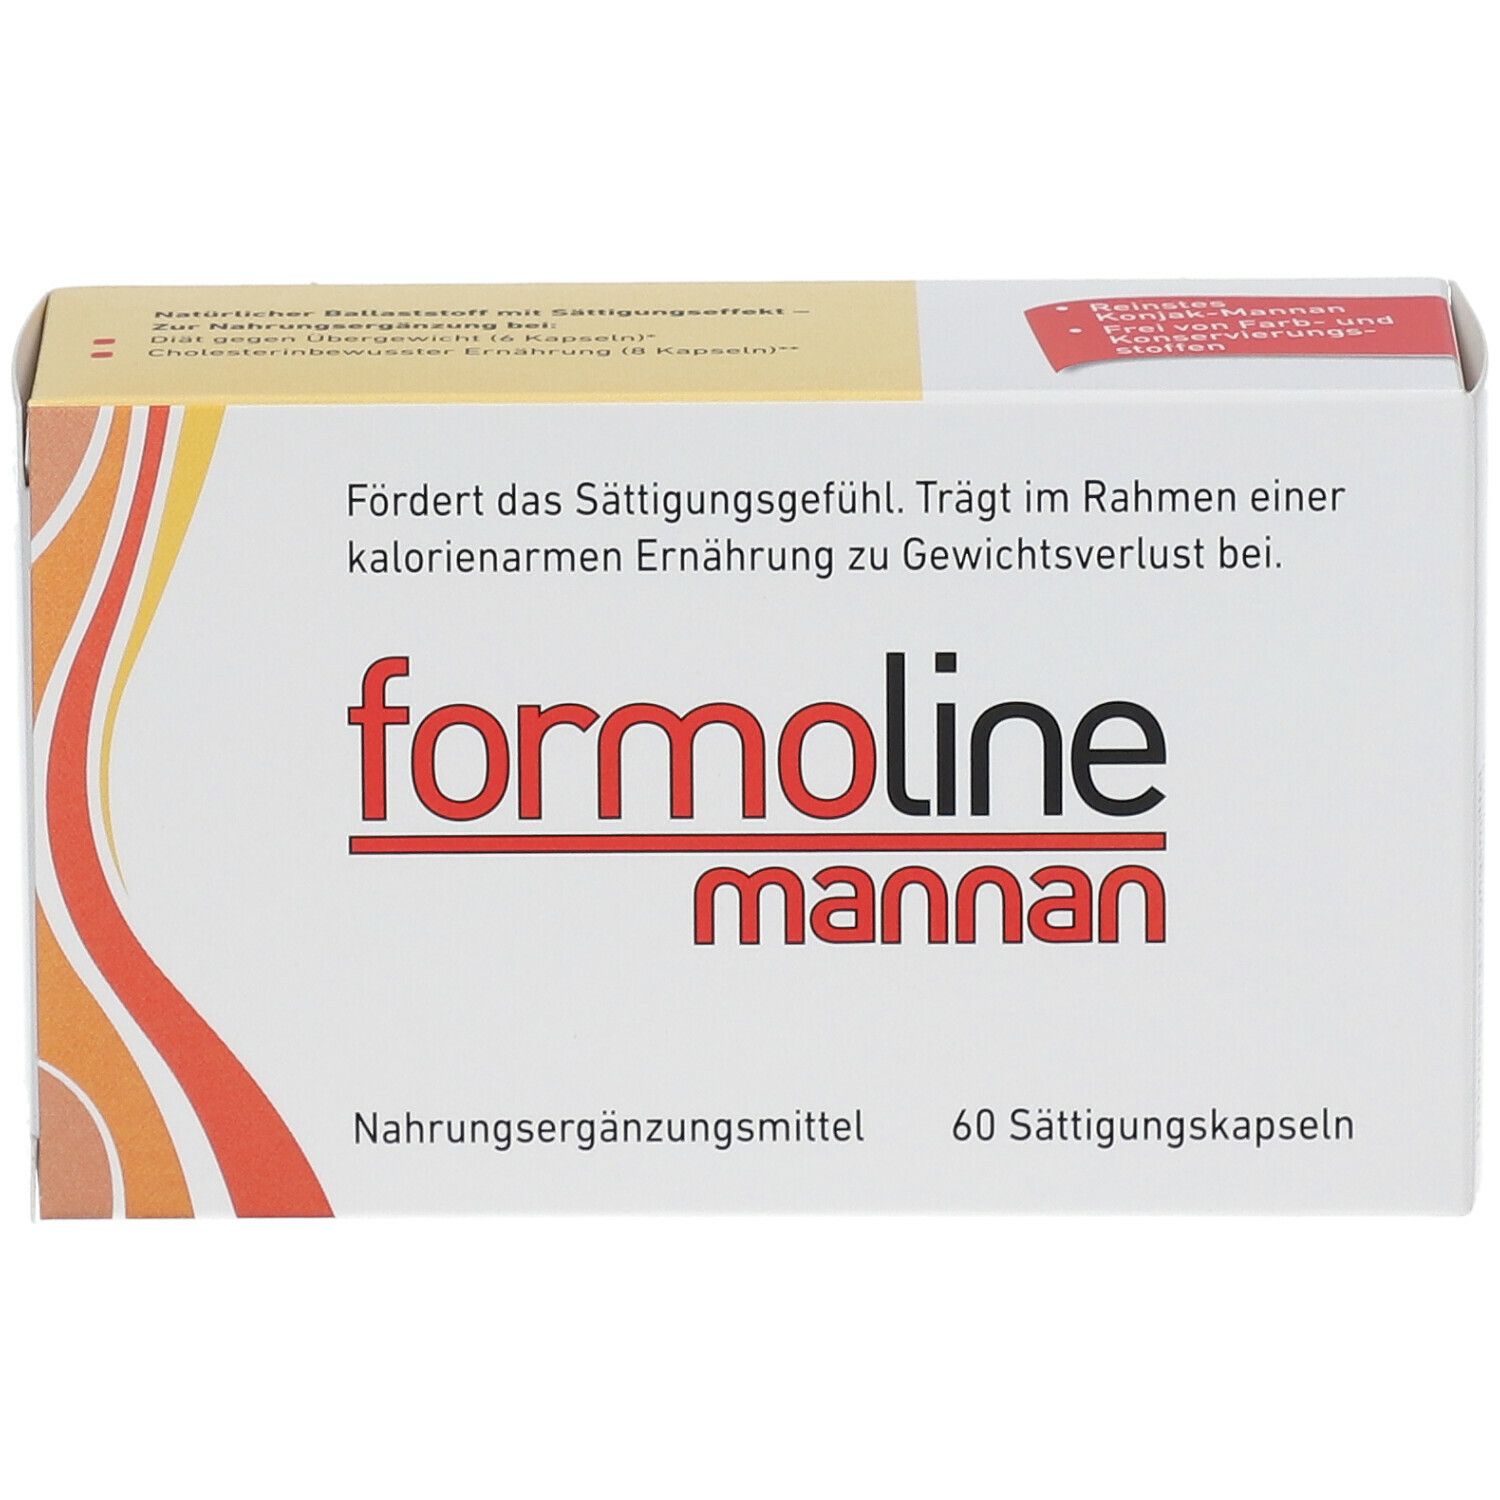 formoline mannan